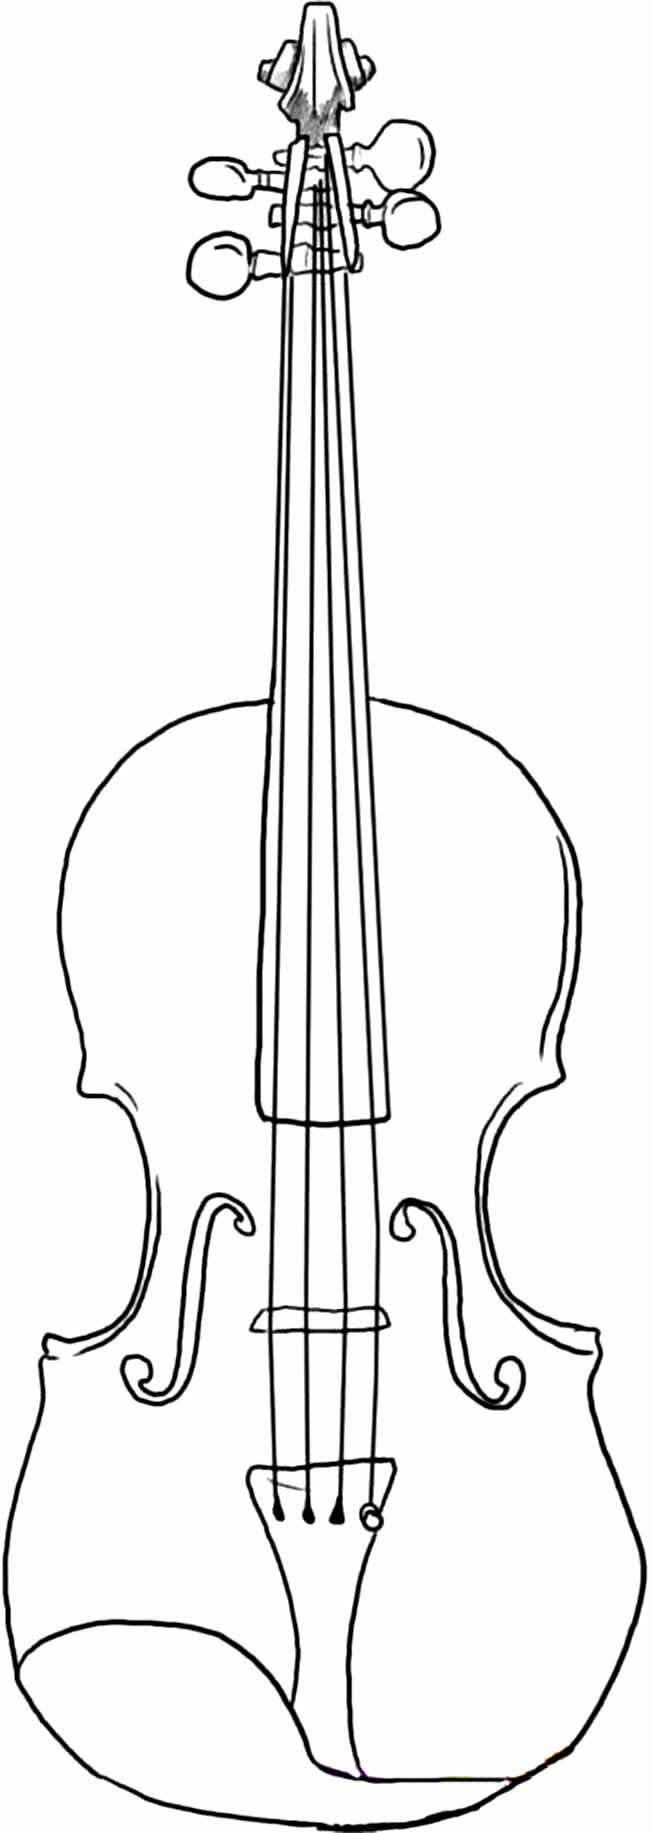 小提琴乐器简笔画图片 小提琴怎么画